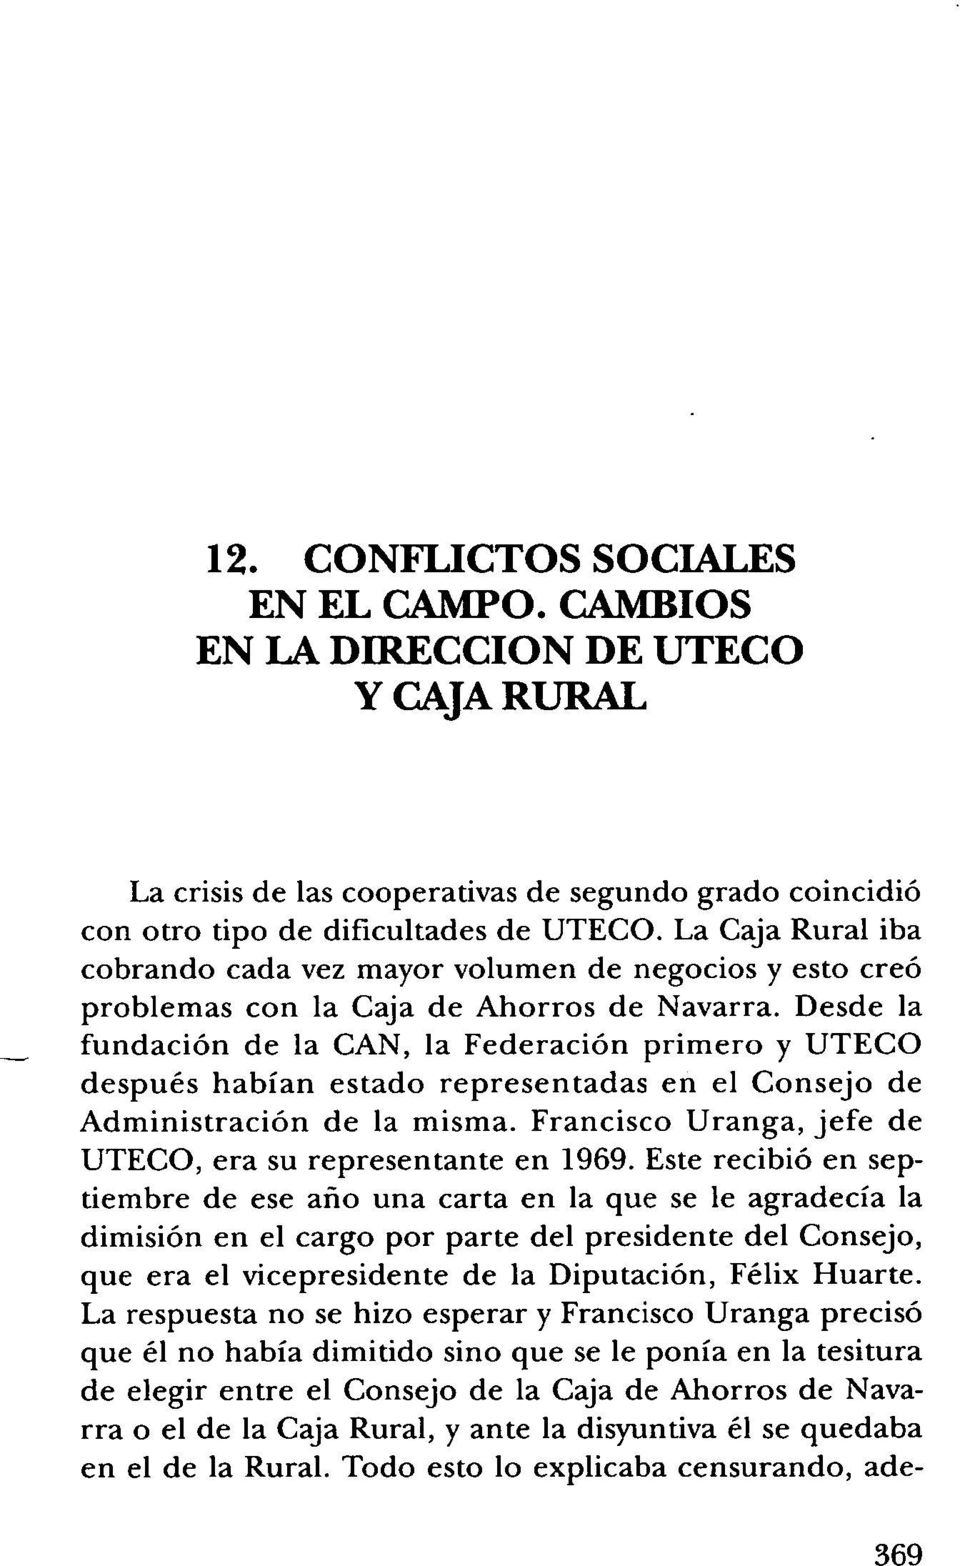 Desde la fundación de la CAN, la Federación primero y UTECO después habían estado representadas en el Consejo de Administración de la misma.